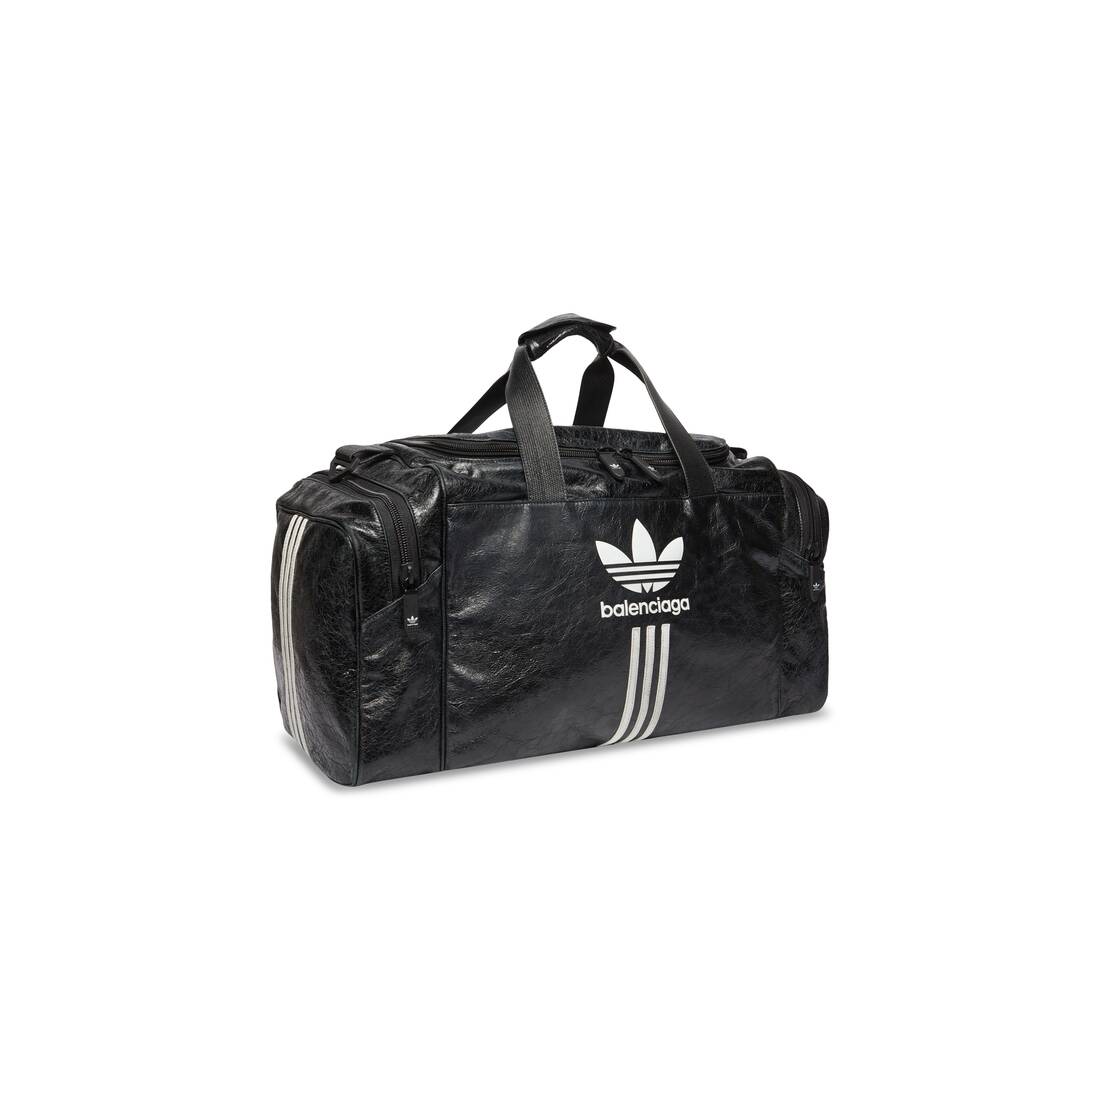 Smeren Inspecteren Ambassadeur Men's Balenciaga / Adidas Gym Bag in Black | Balenciaga US